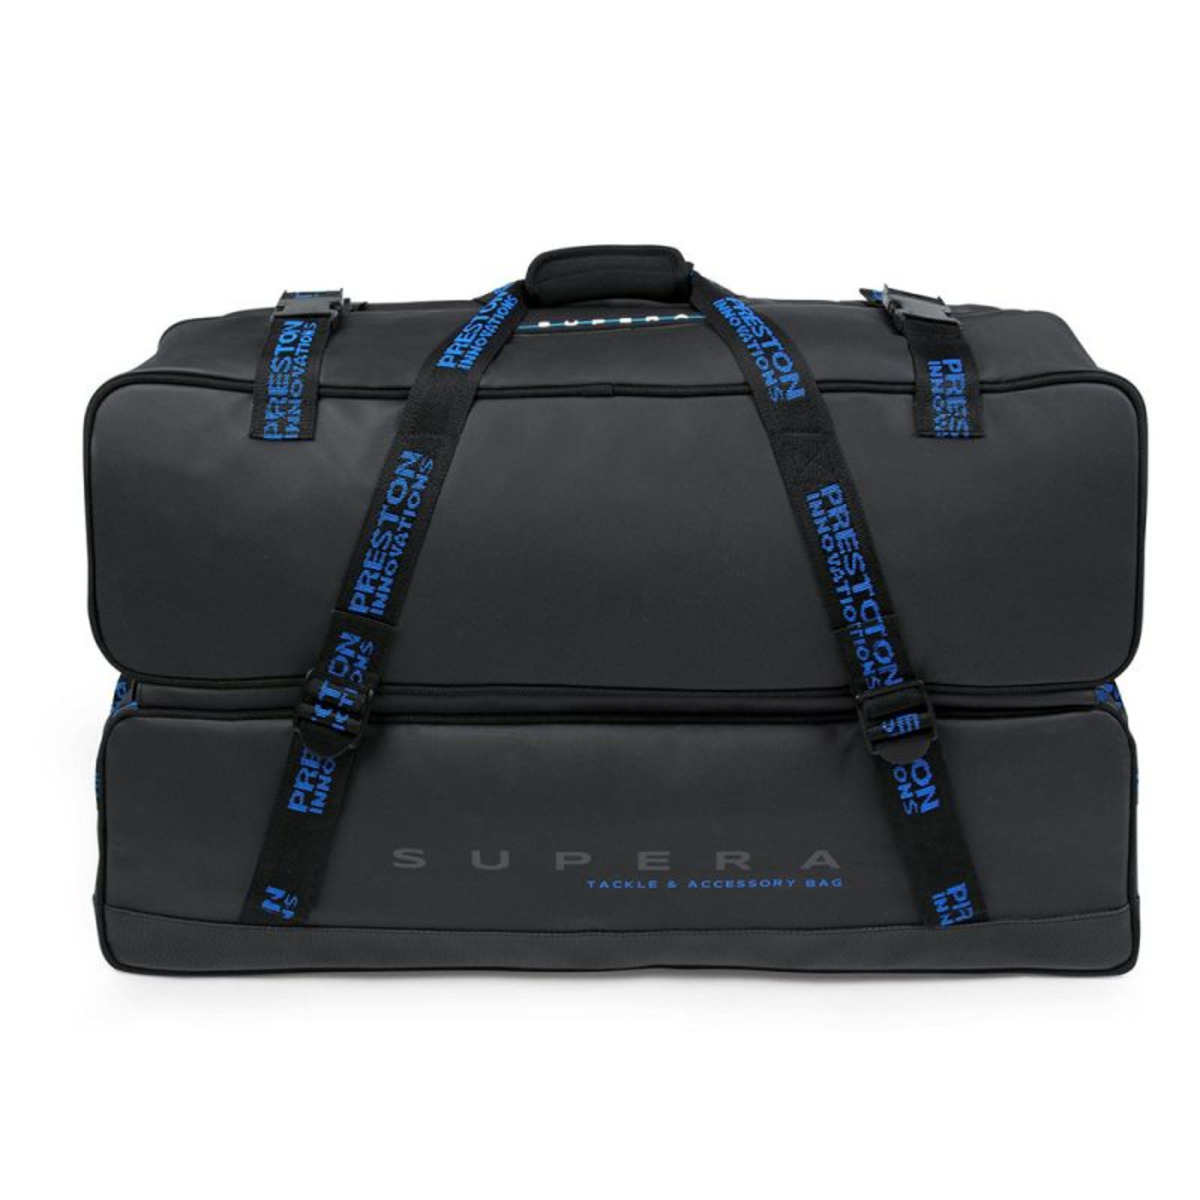 Preston Supera Tackle Accessory Bag - 39x68x30 cm